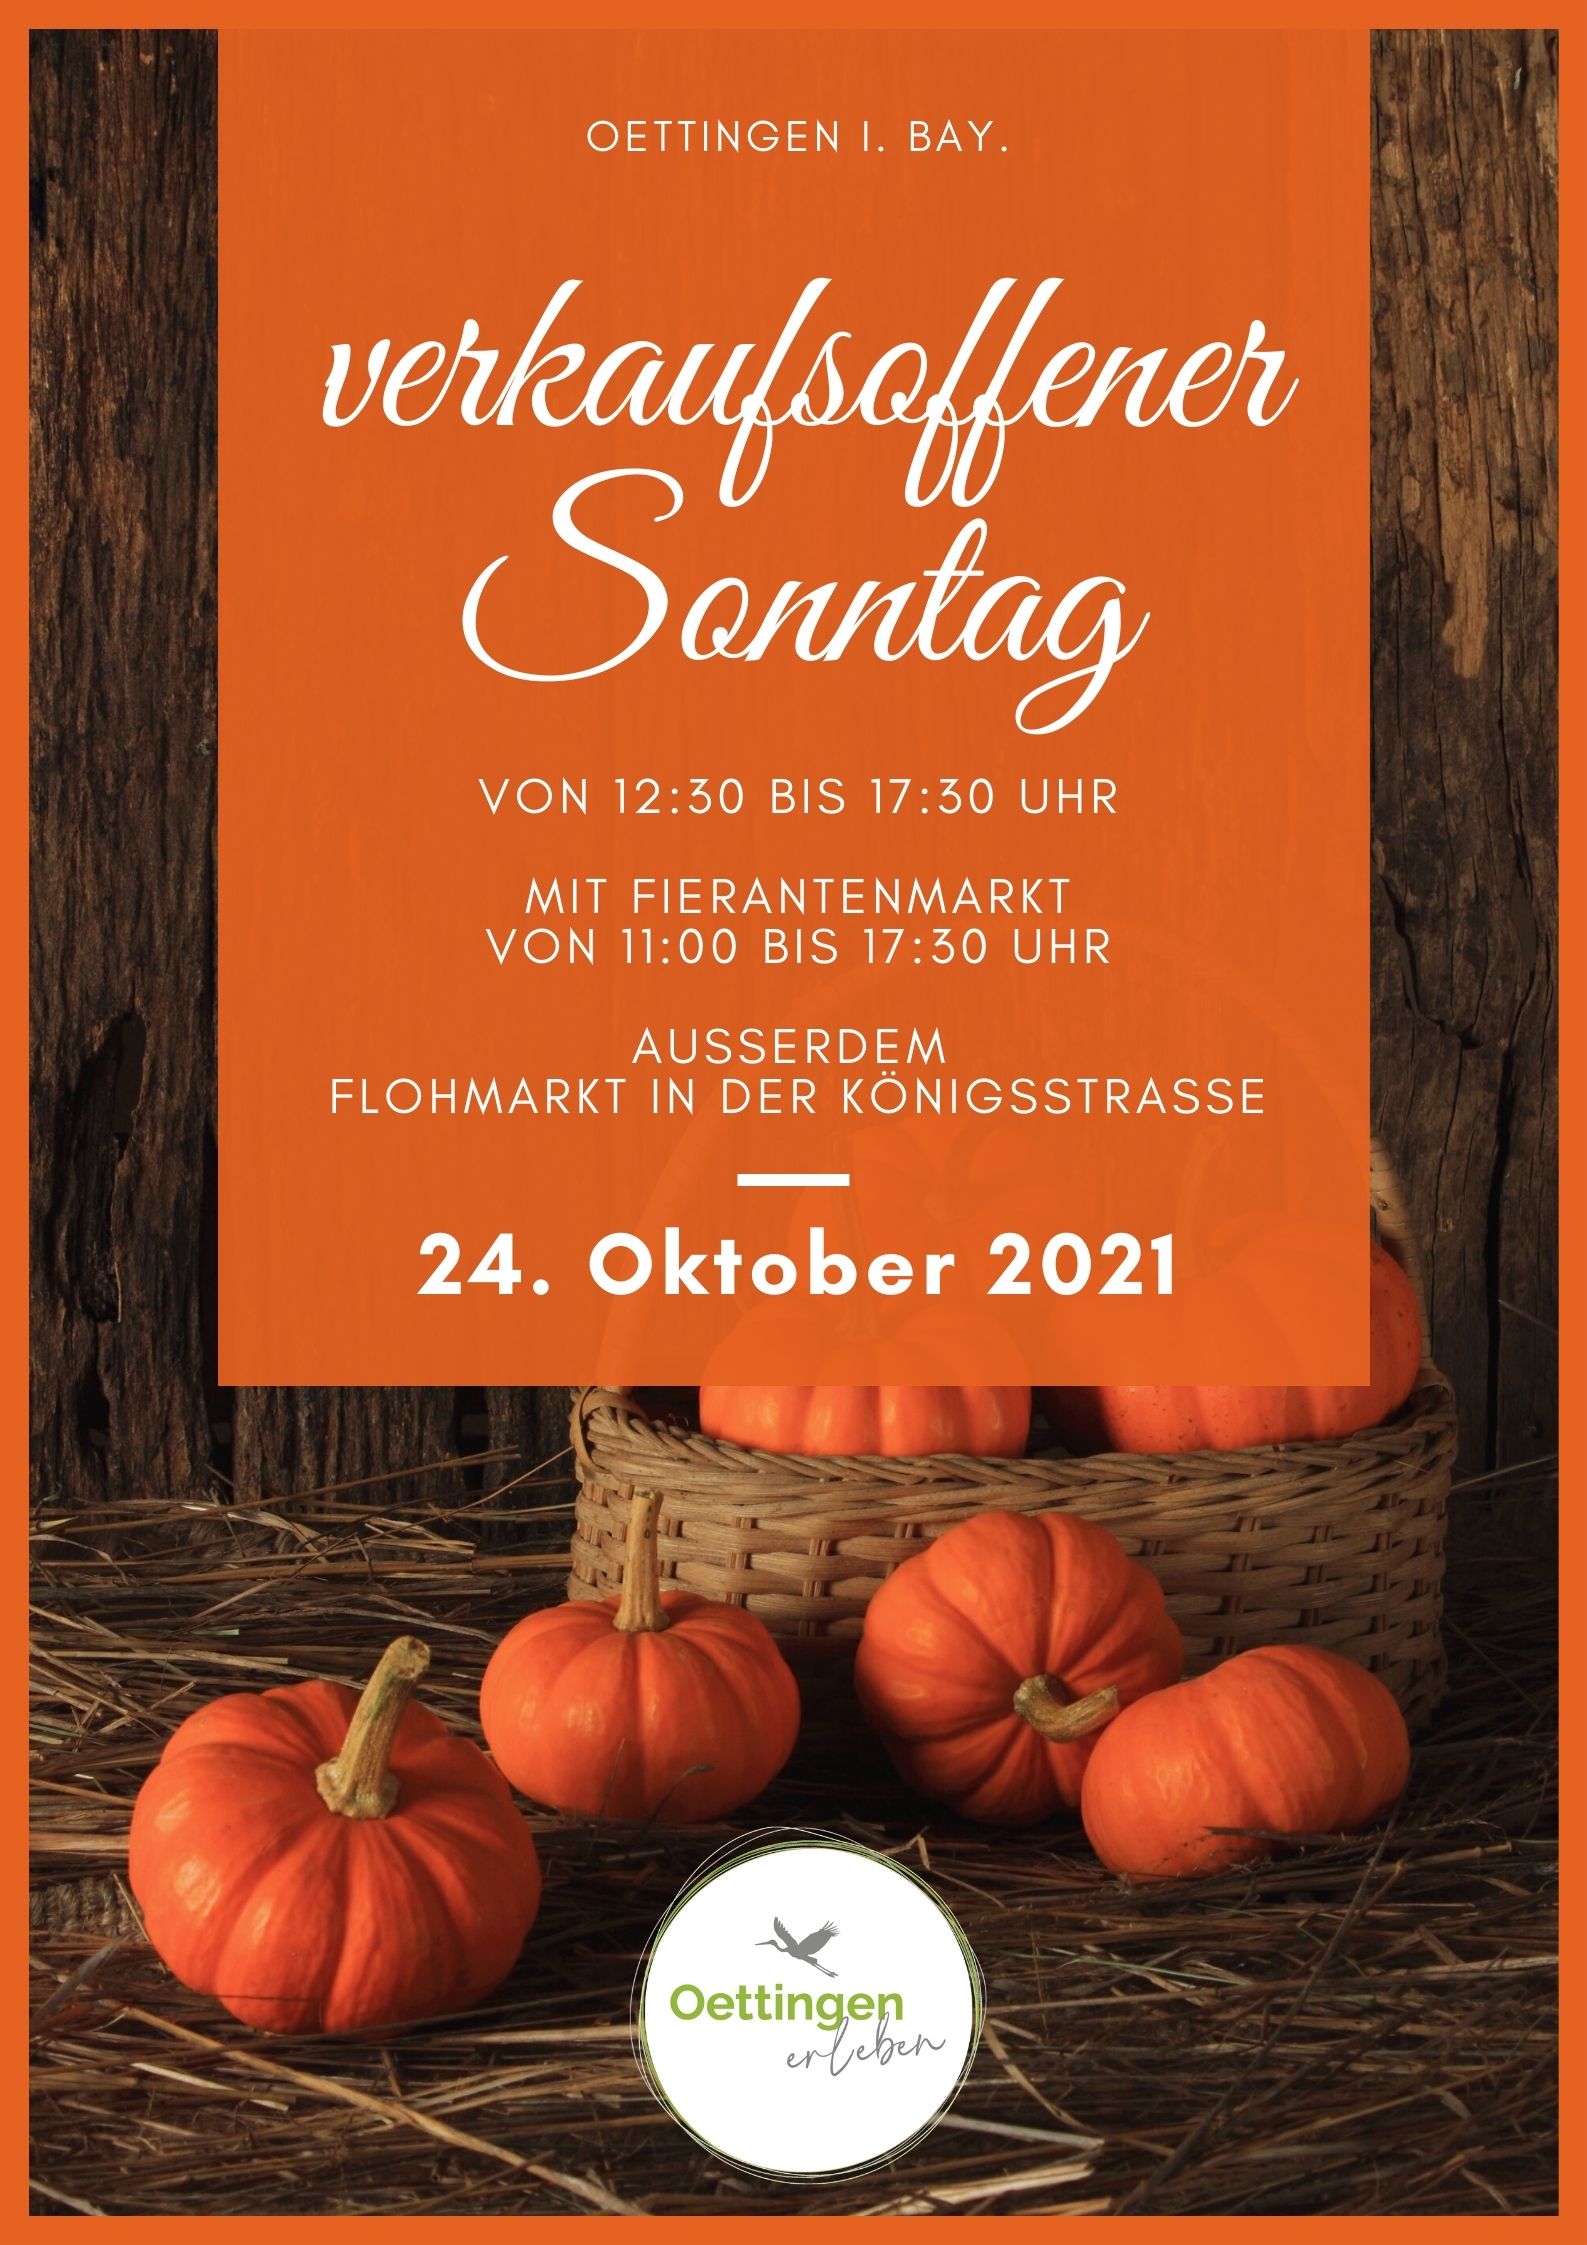 Herbstmarkt am 24. Oktober 2021